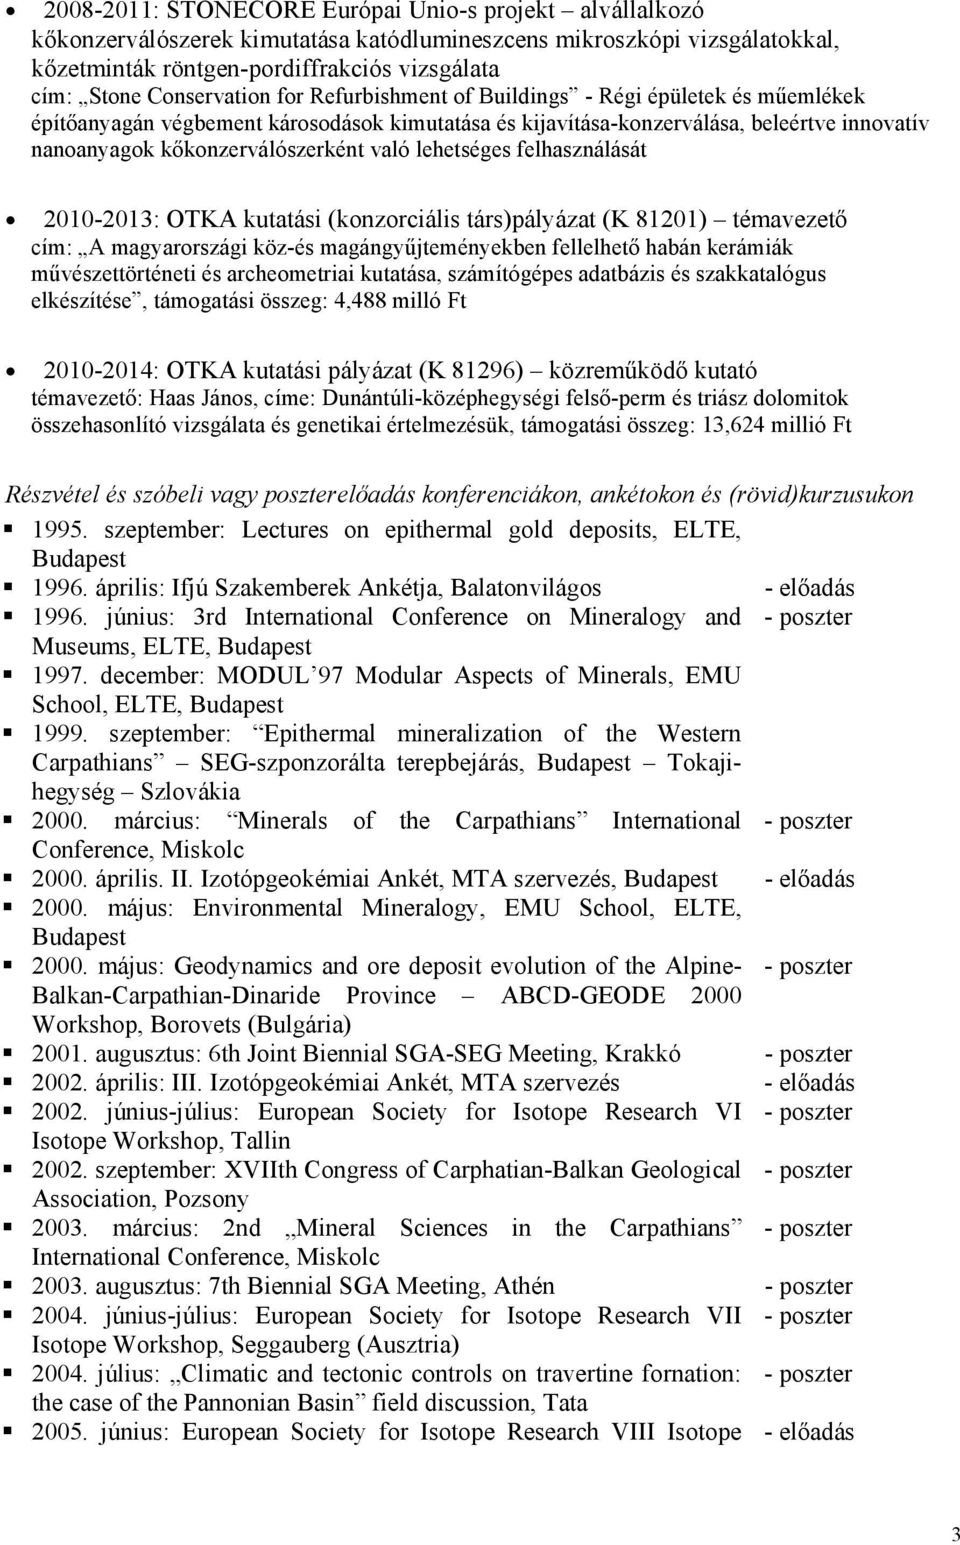 való lehetséges felhasználását 2010-2013: OTKA kutatási (konzorciális társ)pályázat (K 81201) témavezető cím: A magyarországi köz-és magángyűjteményekben fellelhető habán kerámiák művészettörténeti